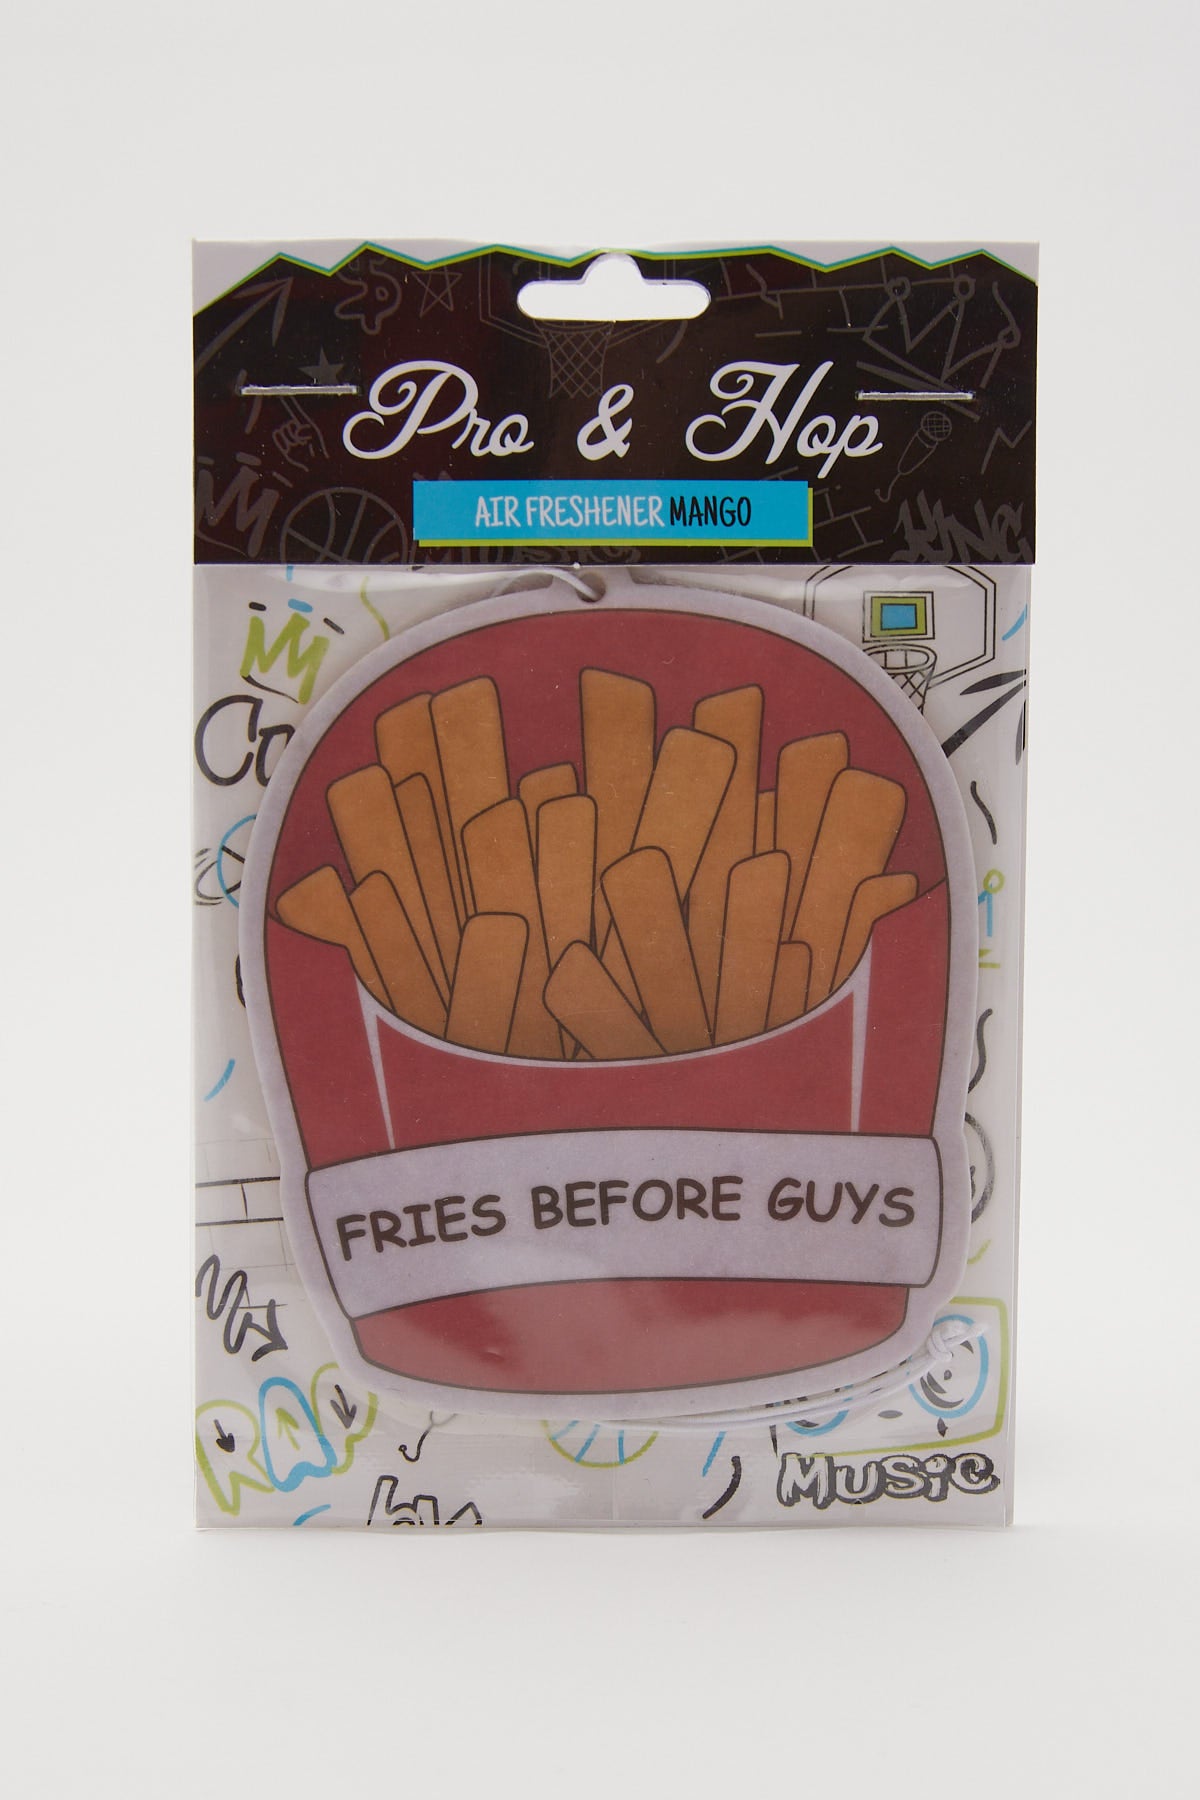 Pro & Hop Fries Before Guys Airfreshener